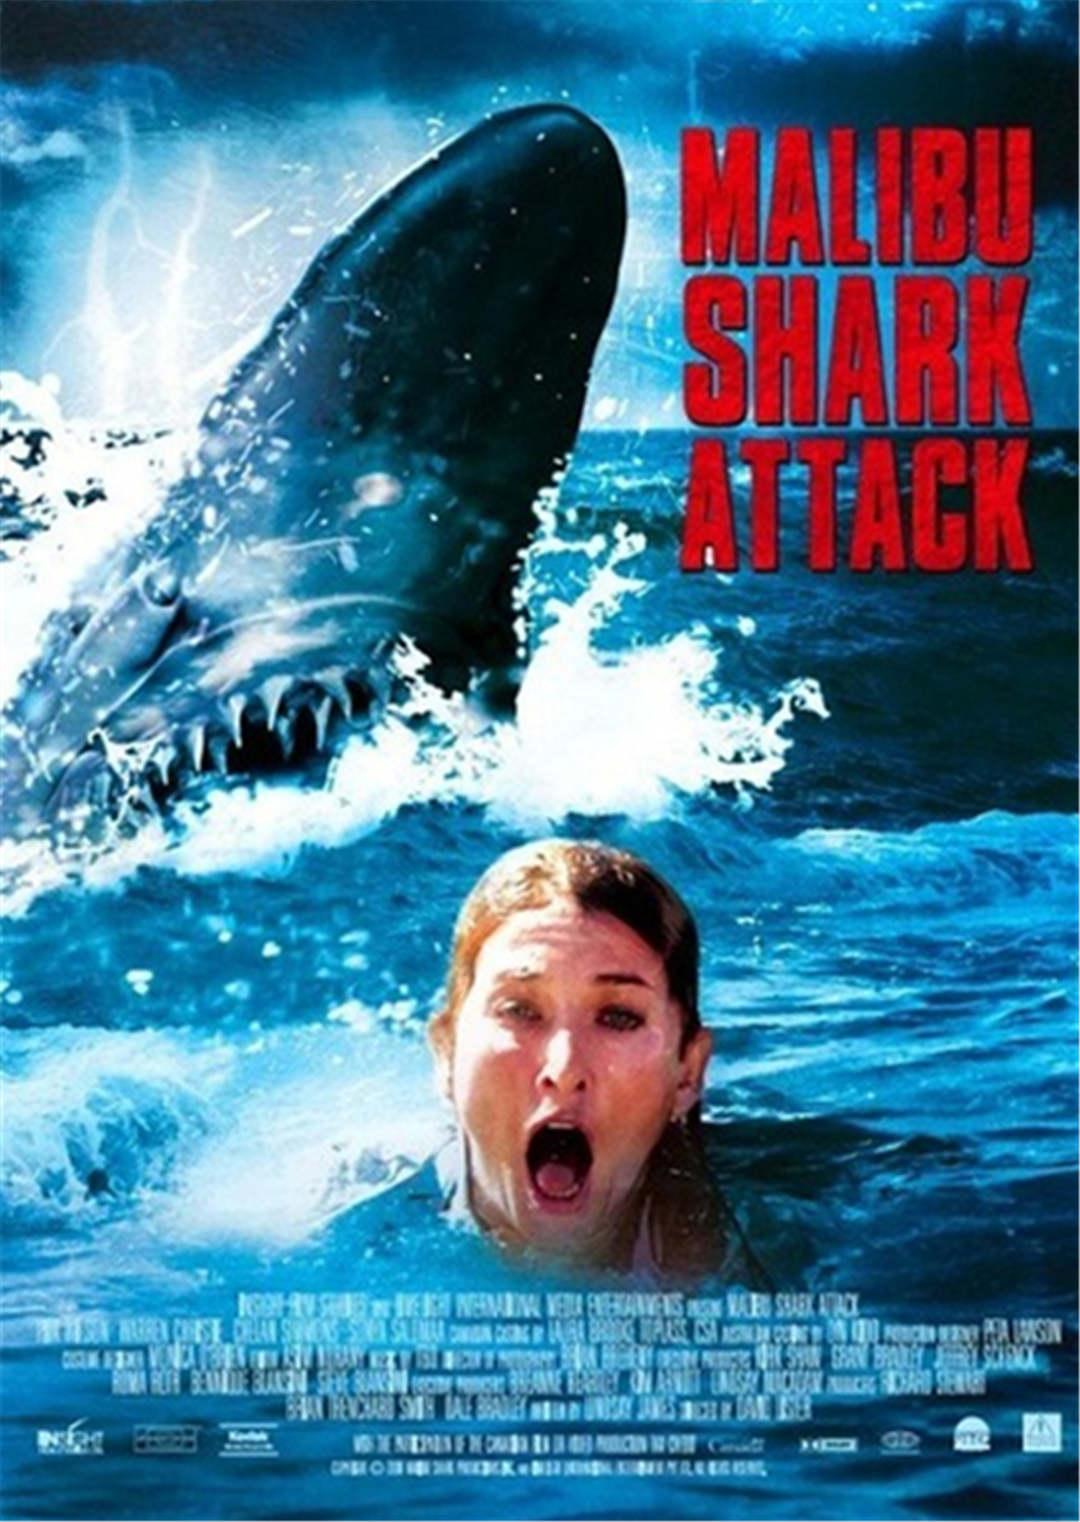 马里布鲨鱼攻击 - 视频在线观看 - 马里布鲨鱼攻击 